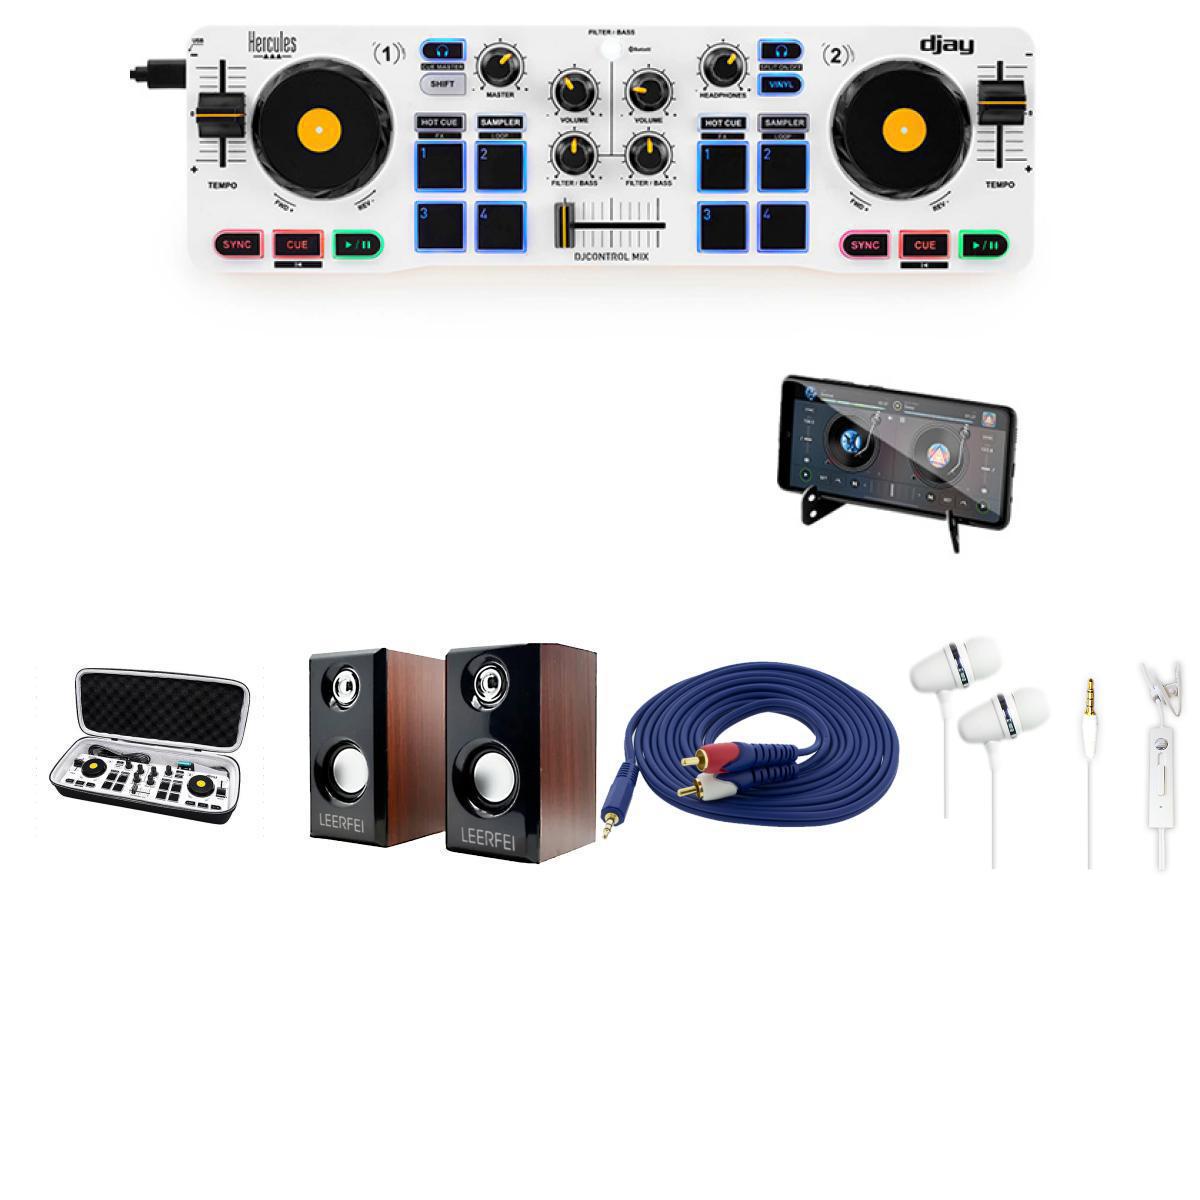 Hercules(ハーキューリース) / DJ Control Mix_for H…の事ならフレンズにご相談ください。ミュージックハウス フレンズだけの4大特典付き！ Hercules(ハーキューリース) / DJControl Mix Bluetooth Wireless DJ Controller (iOS and Android) 2 Decks 【dJay対応】 ワイヤレスポケットDJコントローラー：1点 ♪詳細♪クリックXANAD / EVAケース【DJ Control Starlight/DJCONTROL MIX対応】 セミハードケース ：1点 ♪詳細♪クリック【高品質木材MDF贅沢使用】木製2Wayスピーカー DJ / DTM / 楽器練習最適【安心の国内サポート】：1点 ♪詳細♪クリック【安心の国内サポート】金メッキ 接続ケーブル 【ステレオフォーンミニ - ステレオRCA】 (3m) / Pro-group(プロ・グループ)：1点 ♪詳細♪クリックPro-group(プロ・グループ) / Apple iPhone5/6対応 3.5mmプラグ イヤホンマイク 【ハンズフリー通話対応】：1点 ♪詳細♪クリックHercules(ハーキューリース) / DJ Control Mix_for H…セット商品一覧すぐDJプレイ！全部入りセットヘッドフォンセットケース・イヤホンセットケース・ヘッドホンセットケース＆初心者全部入り高品質木製スピーカーセットケース＆初心者全部入りLEDスピーカーセットケース＆初心者全部入りLマルチメディアスピーカーセットケース＆初心者全部入り低音ブースト対応木製スピーカーセットケース＆初心者全部入り低音ブースト対応木製スピーカーセットケース＆イヤホン、高品質木製スピーカーセットケース＆イヤホン、LEDスピーカーセットケース＆イヤホン、マルチメディアスピーカーセットケース＆イヤホン、低音ブースト対応木製スピーカーセット Hercules(ハーキューリース) / DJ Control Mix_for H…の特長！ケース＆イヤホン、高品質木製スピーカーセット Hercules(ハーキューリース) / DJ Control Mix_for H…のココが凄い！ DJコントローラー/本体のみの特徴ポケットサイズのワイヤレスPCDJコントローラーポケットサイズでどこへでも持ち運びできる！※本製品にはDJソフトウェアdJayに対応しています。 /セミハードケース Bの特徴DJ Control Starlight対応ケースEVA Hard Caseは圧縮成型EVA素材で構成され、軽量・頑丈さを兼ね備えたDJコントローラー用ハードケースです。※商品はケースのみです。機材は付属しません。 スピーカー/【高品質木材MDF贅沢使用】木製2Wayスピーカー DJ / DTM / 楽器練習最適【安心の国内サポート】の特徴この価格ではあり得ない贅沢な木材のMDFを使用ご自宅でのDJ,DTMなど楽器練習に最適な音量を確保します。スタイリッシュな外観と優れた音響性能を融合 接続ケーブル/【安心の国内サポート】金メッキ 接続ケーブル 【ステレオフォーンミニ - ステレオRCA】 (3m) / Pro-group(プロ・グループ)の特徴拘りの金メッキプラグ仕様、高音質フラットケーブル！今だけ、お試し価格！高音質フラットを維持し、超コストパフォーマンスを実現！今までのケーブルの金額を考えてしまう、革命的なケーブル！！エコパッケージを採用し、コスト大幅カット！！Beldenの様な超絶的なフラットとはいきませんが、Audio-○○nicaとか、高級オーディオ系のケーブルを買うより相当お得です！！ イヤホン/Pro-group(プロ・グループ) / Apple iPhone5/6対応 3.5mmプラグ イヤホンマイク 【ハンズフリー通話対応】の特徴ハンズフリー通話に拘わった高性能イヤホンマイクハンズフリー通話にこだわり、集音性能、会話の発音性能をとことん分析して、とても扱いやすくしたイヤホンマイクです。ステレオ、ヴォリュームコントロール、曲再生コントロールに対応。 全て新品。ケーブル・消耗品以外メーカー1年保証書付のでご安心してお買いもの頂けます。Hercules(ハーキューリース) / DJ Control Mix_for H…の事ならフレンズにご相談ください。ミュージックハウス フレンズだけの4大特典付き！ Hercules(ハーキューリース) / DJControl Mix Bluetooth Wireless DJ Controller (iOS and Android) 2 Decks 【dJay対応】 ワイヤレスポケットDJコントローラー：1点 ♪詳細♪クリックXANAD / EVAケース【DJ Control Starlight/DJCONTROL MIX対応】 セミハードケース ：1点 ♪詳細♪クリック【高品質木材MDF贅沢使用】木製2Wayスピーカー DJ / DTM / 楽器練習最適【安心の国内サポート】：1点 ♪詳細♪クリック【安心の国内サポート】金メッキ 接続ケーブル 【ステレオフォーンミニ - ステレオRCA】 (3m) / Pro-group(プロ・グループ)：1点 ♪詳細♪クリックPro-group(プロ・グループ) / Apple iPhone5/6対応 3.5mmプラグ イヤホンマイク 【ハンズフリー通話対応】：1点 ♪詳細♪クリックHercules(ハーキューリース) / DJ Control Mix_for H…セット商品一覧すぐDJプレイ！全部入りセットヘッドフォンセットケース・イヤホンセットケース・ヘッドホンセットケース＆初心者全部入り高品質木製スピーカーセットケース＆初心者全部入りLEDスピーカーセットケース＆初心者全部入りLマルチメディアスピーカーセットケース＆初心者全部入り低音ブースト対応木製スピーカーセットケース＆初心者全部入り低音ブースト対応木製スピーカーセットケース＆イヤホン、高品質木製スピーカーセットケース＆イヤホン、LEDスピーカーセットケース＆イヤホン、マルチメディアスピーカーセットケース＆イヤホン、低音ブースト対応木製スピーカーセット Hercules(ハーキューリース) / DJ Control Mix_for H…の特長！ケース＆イヤホン、高品質木製スピーカーセット Hercules(ハーキューリース) / DJ Control Mix_for H…のココが凄い！ DJコントローラー/本体のみの特徴ポケットサイズのワイヤレスPCDJコントローラーポケットサイズでどこへでも持ち運びできる！※本製品にはDJソフトウェアdJayに対応しています。 /セミハードケース Bの特徴DJ Control Starlight対応ケースEVA Hard Caseは圧縮成型EVA素材で構成され、軽量・頑丈さを兼ね備えたDJコントローラー用ハードケースです。※商品はケースのみです。機材は付属しません。 スピーカー/【高品質木材MDF贅沢使用】木製2Wayスピーカー DJ / DTM / 楽器練習最適【安心の国内サポート】の特徴この価格ではあり得ない贅沢な木材のMDFを使用ご自宅でのDJ,DTMなど楽器練習に最適な音量を確保します。スタイリッシュな外観と優れた音響性能を融合 接続ケーブル/【安心の国内サポート】金メッキ 接続ケーブル 【ステレオフォーンミニ - ステレオRCA】 (3m) / Pro-group(プロ・グループ)の特徴拘りの金メッキプラグ仕様、高音質フラットケーブル！今だけ、お試し価格！高音質フラットを維持し、超コストパフォーマンスを実現！今までのケーブルの金額を考えてしまう、革命的なケーブル！！エコパッケージを採用し、コスト大幅カット！！Beldenの様な超絶的なフラットとはいきませんが、Audio-○○nicaとか、高級オーディオ系のケーブルを買うより相当お得です！！ イヤホン/Pro-group(プロ・グループ) / Apple iPhone5/6対応 3.5mmプラグ イヤホンマイク 【ハンズフリー通話対応】の特徴ハンズフリー通話に拘わった高性能イヤホンマイクハンズフリー通話にこだわり、集音性能、会話の発音性能をとことん分析して、とても扱いやすくしたイヤホンマイクです。ステレオ、ヴォリュームコントロール、曲再生コントロールに対応。 全て新品。ケーブル・消耗品以外メーカー1年保証書付のでご安心してお買いもの頂けます。